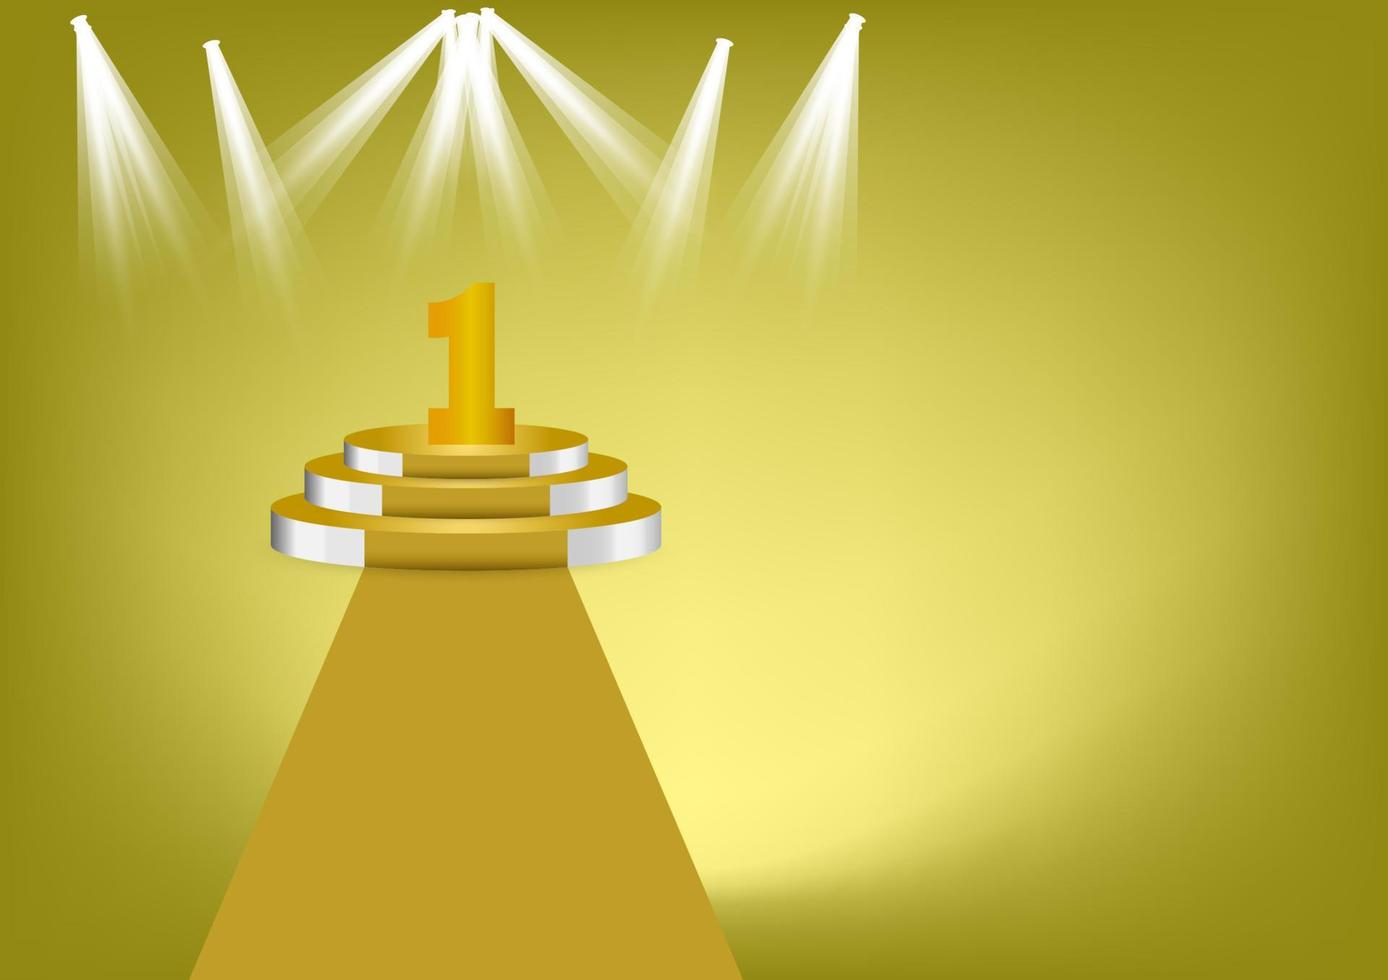 nummer 1 goldfarbe auf goldenem podium ist der gewinner ist in der ersten vektorillustration mit goldfarbenem hintergrundkopienraum vektor